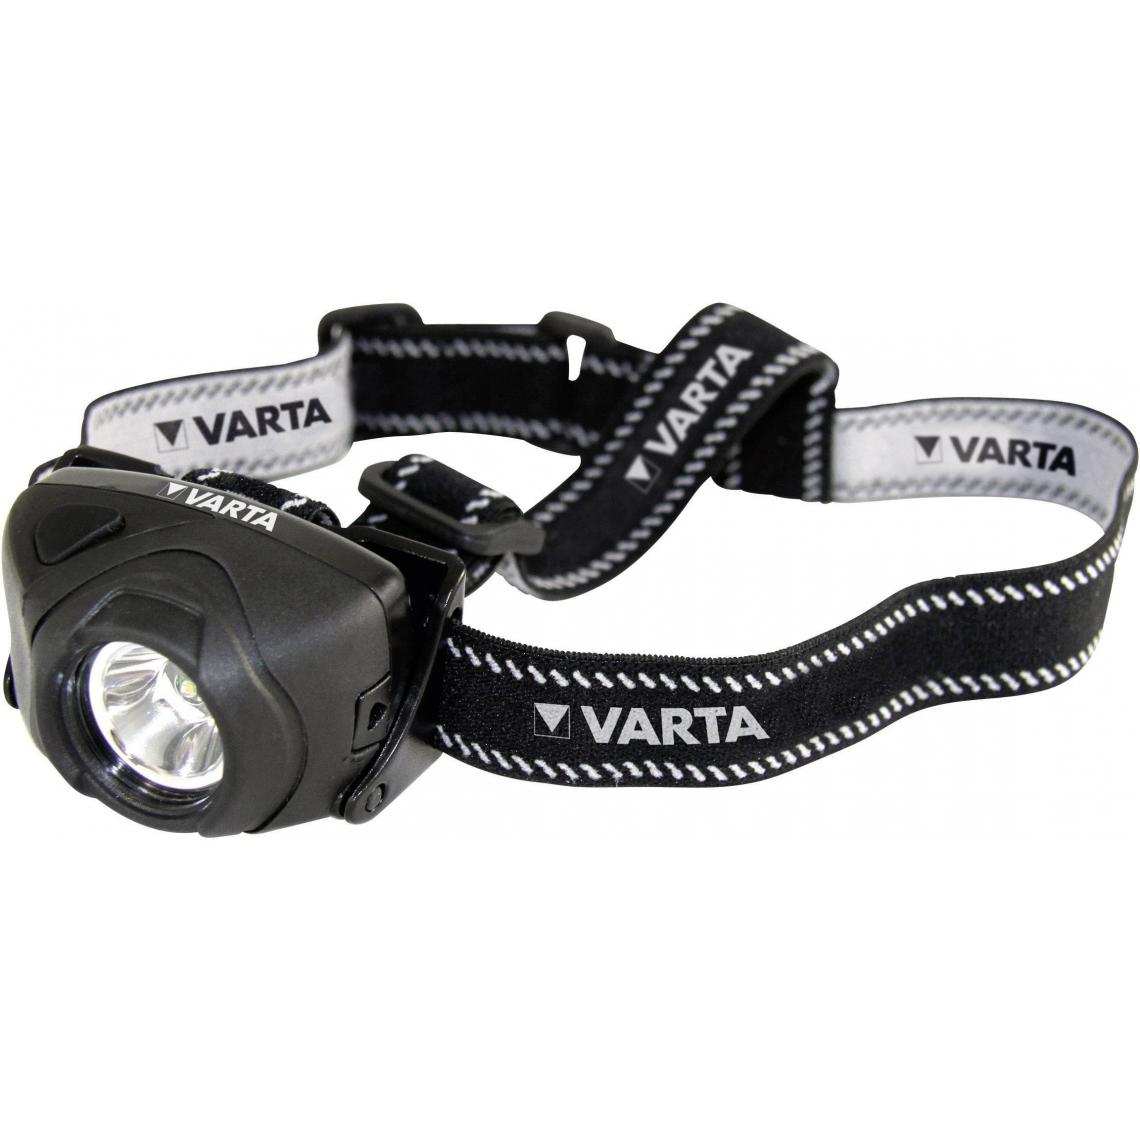 Varta - varta - 17731101421 - Lampes portatives sans fil